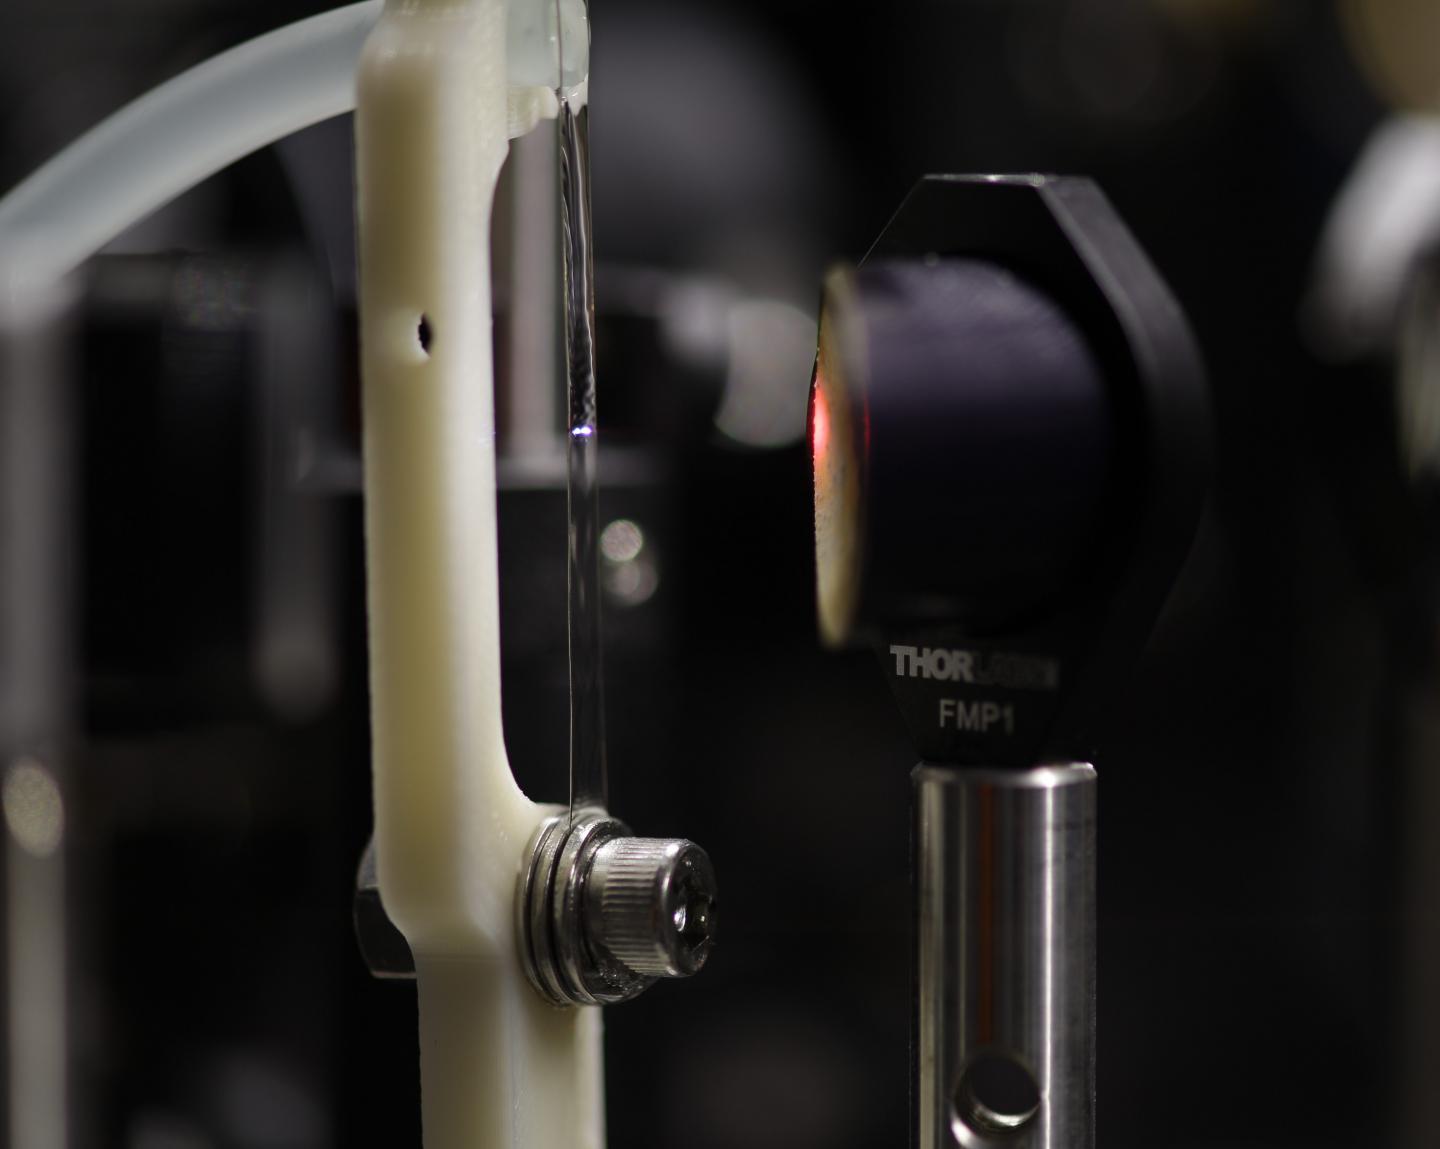 Water Film Used to Generate Terahertz Waves